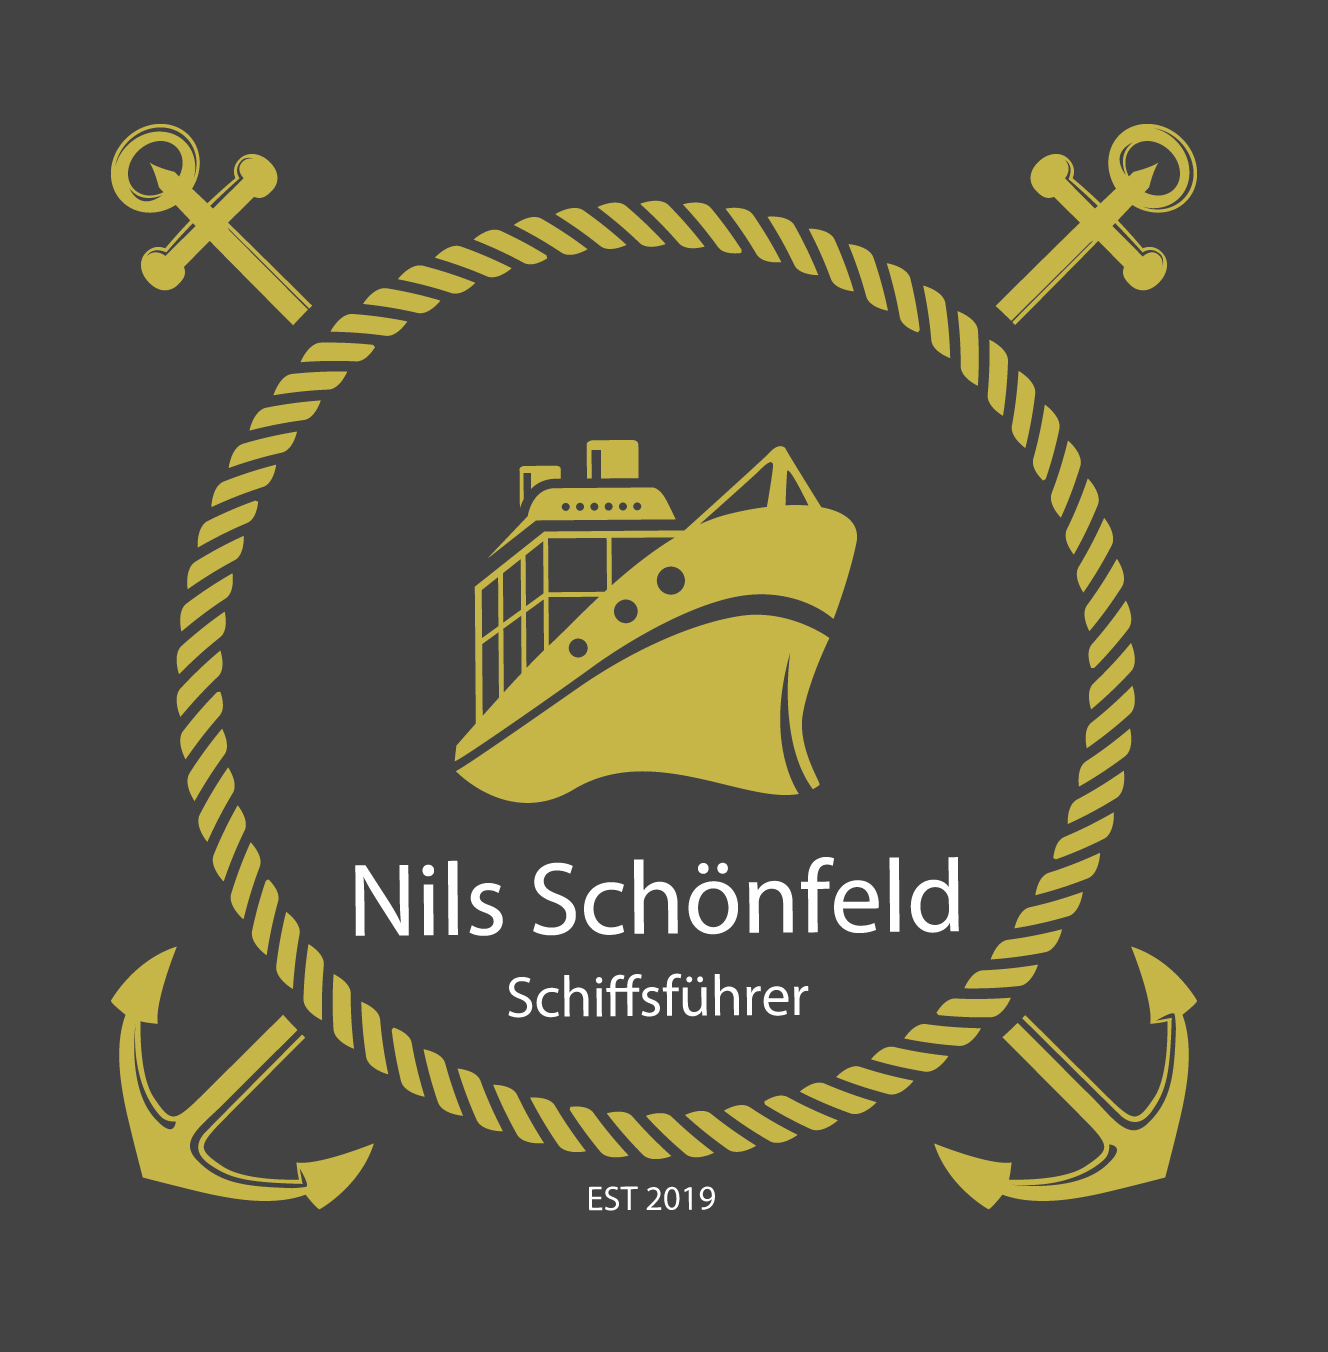 Schiffsführer Nils Schönfeld